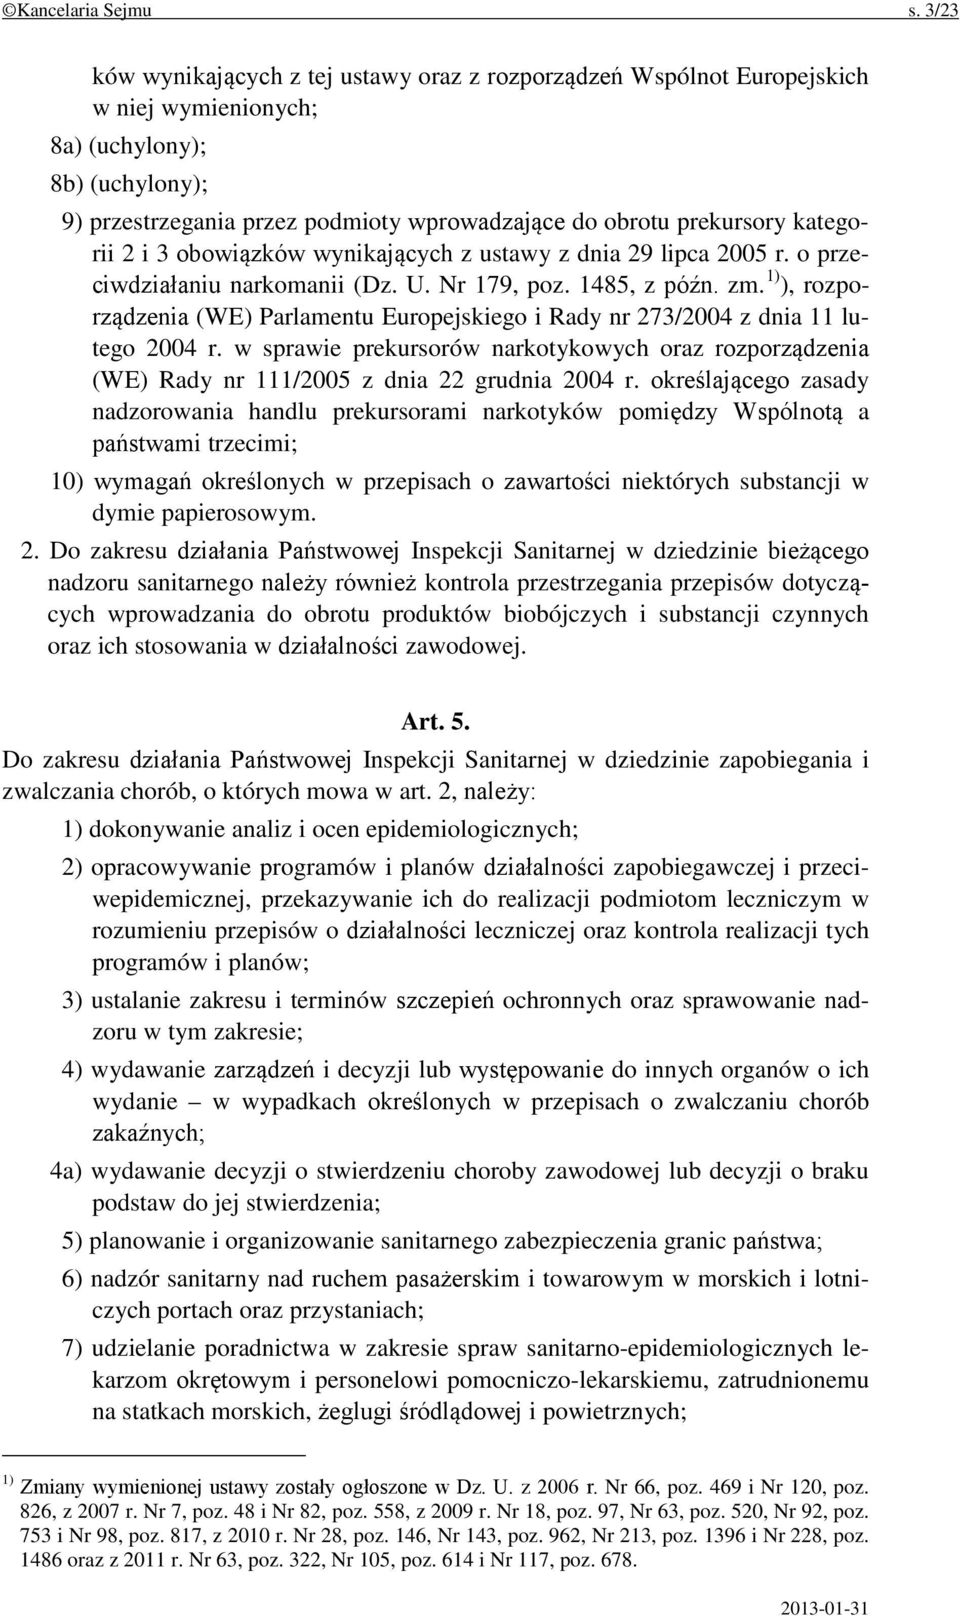 kategorii 2 i 3 obowiązków wynikających z ustawy z dnia 29 lipca 2005 r. o przeciwdziałaniu narkomanii (Dz. U. Nr 179, poz. 1485, z późn. zm.